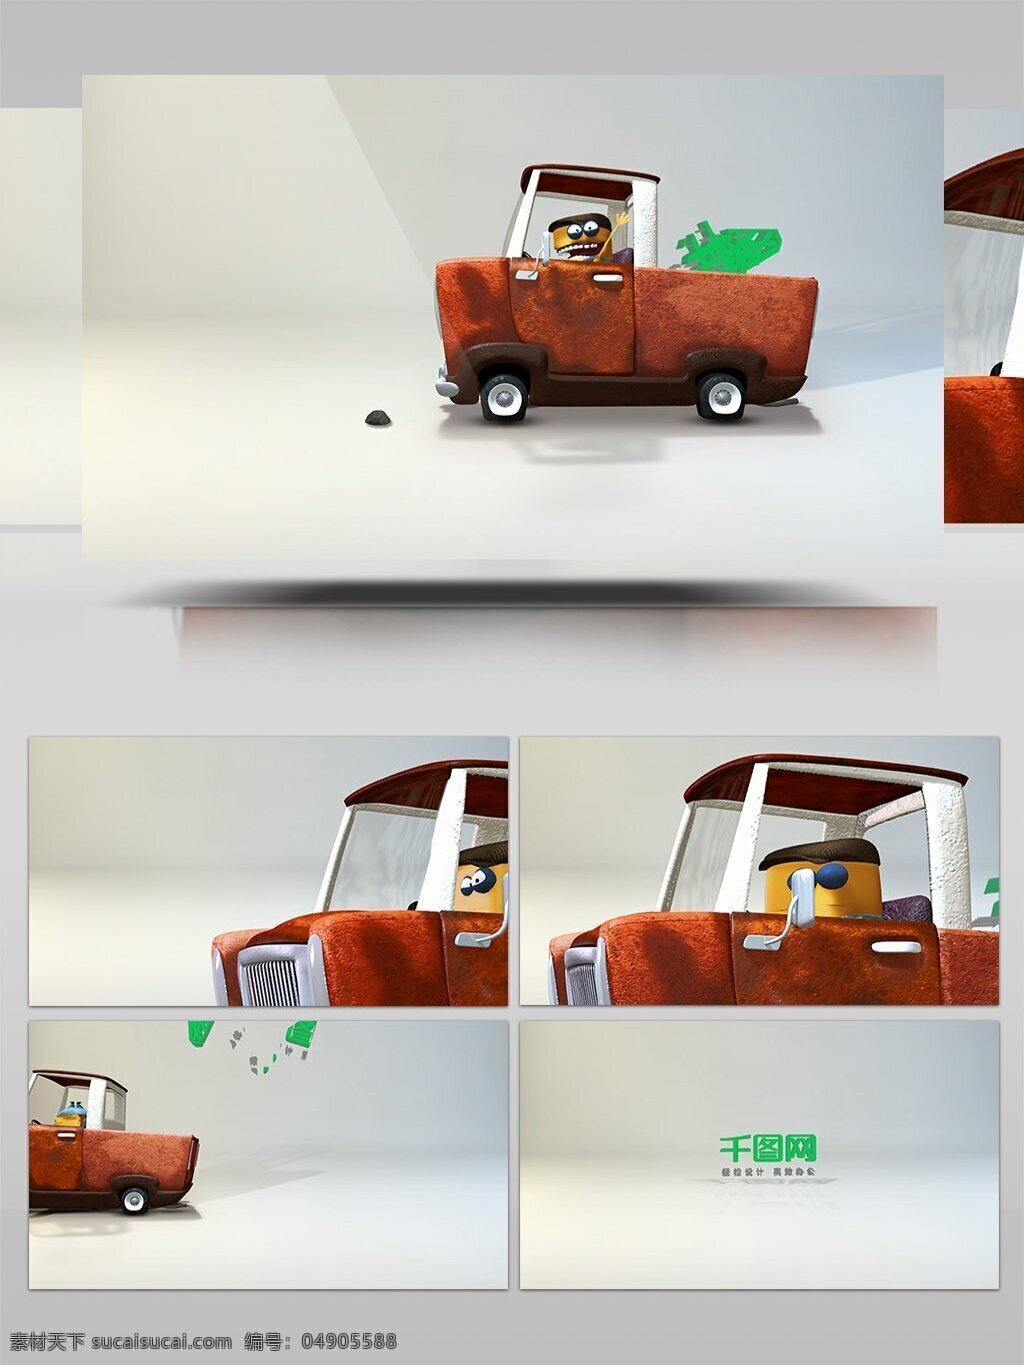 小 卡车 颠簸 后 掉落 标志 卡通 动画 ae 模板 货车 小人 可爱 孩子 3d效果 角色 乐趣 高效 儿童 复古 老电影